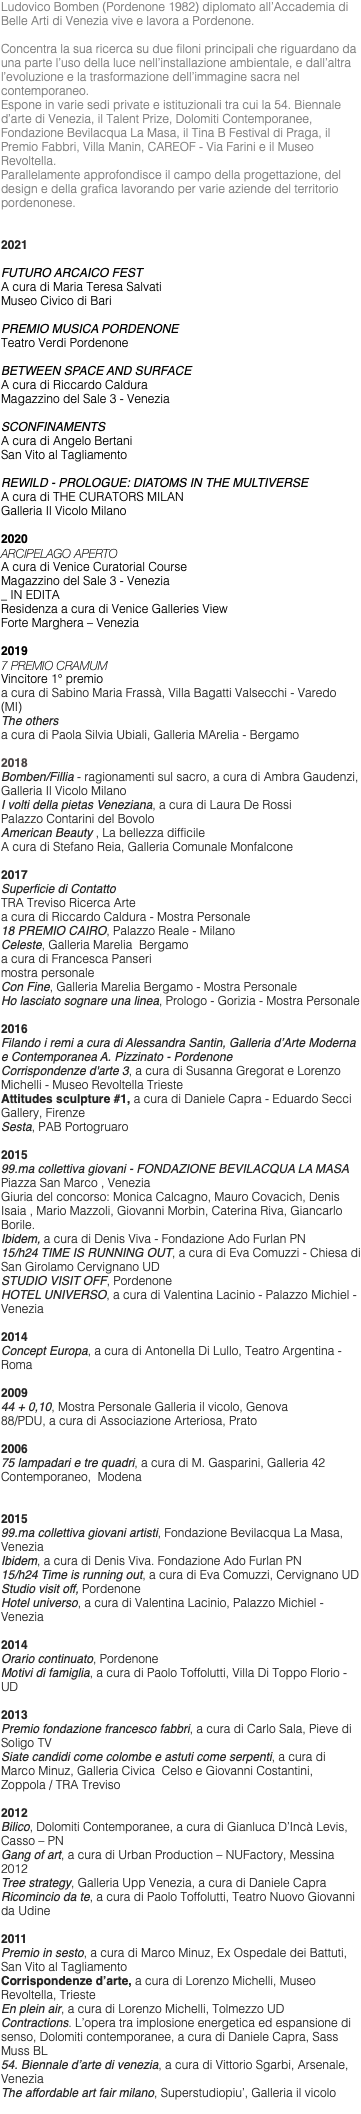 Ludovico Bomben (Pordenone 1982) diplomato all’Accademia di Belle Arti di Venezia vive e lavora a Pordenone. Concentra la sua ricerca su due filoni principali che riguardano da una parte l’uso della luce nell’installazione ambientale, e dall’altra l’evoluzione e la trasformazione dell’immagine sacra nel contemporaneo. Espone in varie sedi private e istituzionali tra cui la 54. Biennale d’arte di Venezia, il Talent Prize, Dolomiti Contemporanee, Fondazione Bevilacqua La Masa, il Tina B Festival di Praga, il Premio Fabbri, Villa Manin, CAREOF - Via Farini e il Museo Revoltella. Parallelamente approfondisce il campo della progettazione, del design e della grafica lavorando per varie aziende del territorio pordenonese. 2021 FUTURO ARCAICO FEST A cura di Maria Teresa Salvati Museo Civico di Bari PREMIO MUSICA PORDENONE Teatro Verdi Pordenone BETWEEN SPACE AND SURFACE A cura di Riccardo Caldura Magazzino del Sale 3 - Venezia SCONFINAMENTS A cura di Angelo Bertani San Vito al Tagliamento REWILD - PROLOGUE: DIATOMS IN THE MULTIVERSE A cura di THE CURATORS MILAN Galleria Il Vicolo Milano 2020 ARCIPELAGO APERTO A cura di Venice Curatorial Course Magazzino del Sale 3 - Venezia _ IN EDITA Residenza a cura di Venice Galleries View Forte Marghera – Venezia 2019 7 PREMIO CRAMUM Vincitore 1° premio a cura di Sabino Maria Frassà, Villa Bagatti Valsecchi - Varedo (MI) The others a cura di Paola Silvia Ubiali, Galleria MArelia - Bergamo 2018 Bomben/Fillia - ragionamenti sul sacro, a cura di Ambra Gaudenzi, Galleria Il Vicolo Milano I volti della pietas Veneziana, a cura di Laura De Rossi Palazzo Contarini del Bovolo American Beauty , La bellezza difficile A cura di Stefano Reia, Galleria Comunale Monfalcone 2017 Superficie di Contatto TRA Treviso Ricerca Arte a cura di Riccardo Caldura - Mostra Personale 18 PREMIO CAIRO, Palazzo Reale - Milano Celeste, Galleria Marelia Bergamo a cura di Francesca Panseri mostra personale Con Fine, Galleria Marelia Bergamo - Mostra Personale Ho lasciato sognare una linea, Prologo - Gorizia - Mostra Personale 2016 Filando i remi a cura di Alessandra Santin, Galleria d’Arte Moderna e Contemporanea A. Pizzinato - Pordenone Corrispondenze d'arte 3, a cura di Susanna Gregorat e Lorenzo Michelli - Museo Revoltella Trieste Attitudes sculpture #1, a cura di Daniele Capra - Eduardo Secci Gallery, Firenze Sesta, PAB Portogruaro 2015 99.ma collettiva giovani - FONDAZIONE BEVILACQUA LA MASA Piazza San Marco , Venezia Giuria del concorso: Monica Calcagno, Mauro Covacich, Denis Isaia , Mario Mazzoli, Giovanni Morbin, Caterina Riva, Giancarlo Borile. Ibidem, a cura di Denis Viva - Fondazione Ado Furlan PN 15/h24 TIME IS RUNNING OUT, a cura di Eva Comuzzi - Chiesa di San Girolamo Cervignano UD STUDIO VISIT OFF, Pordenone HOTEL UNIVERSO, a cura di Valentina Lacinio - Palazzo Michiel - Venezia 2014 Concept Europa, a cura di Antonella Di Lullo, Teatro Argentina - Roma 2009 44 + 0,10, Mostra Personale Galleria il vicolo, Genova 88/PDU, a cura di Associazione Arteriosa, Prato 2006 75 lampadari e tre quadri, a cura di M. Gasparini, Galleria 42 Contemporaneo, Modena 2015 99.ma collettiva giovani artisti, Fondazione Bevilacqua La Masa, Venezia Ibidem, a cura di Denis Viva. Fondazione Ado Furlan PN 15/h24 Time is running out, a cura di Eva Comuzzi, Cervignano UD Studio visit off, Pordenone Hotel universo, a cura di Valentina Lacinio, Palazzo Michiel - Venezia 2014 Orario continuato, Pordenone Motivi di famiglia, a cura di Paolo Toffolutti, Villa Di Toppo Florio - UD 2013 Premio fondazione francesco fabbri, a cura di Carlo Sala, Pieve di Soligo TV Siate candidi come colombe e astuti come serpenti, a cura di Marco Minuz, Galleria Civica Celso e Giovanni Costantini, Zoppola / TRA Treviso 2012 Bilico, Dolomiti Contemporanee, a cura di Gianluca D’Incà Levis, Casso – PN Gang of art, a cura di Urban Production – NUFactory, Messina 2012 Tree strategy, Galleria Upp Venezia, a cura di Daniele Capra Ricomincio da te, a cura di Paolo Toffolutti, Teatro Nuovo Giovanni da Udine 2011 Premio in sesto, a cura di Marco Minuz, Ex Ospedale dei Battuti, San Vito al Tagliamento Corrispondenze d’arte, a cura di Lorenzo Michelli, Museo Revoltella, Trieste En plein air, a cura di Lorenzo Michelli, Tolmezzo UD Contractions. L’opera tra implosione energetica ed espansione di senso, Dolomiti contemporanee, a cura di Daniele Capra, Sass Muss BL 54. Biennale d’arte di venezia, a cura di Vittorio Sgarbi, Arsenale, Venezia The affordable art fair milano, Superstudiopiu’, Galleria il vicolo 